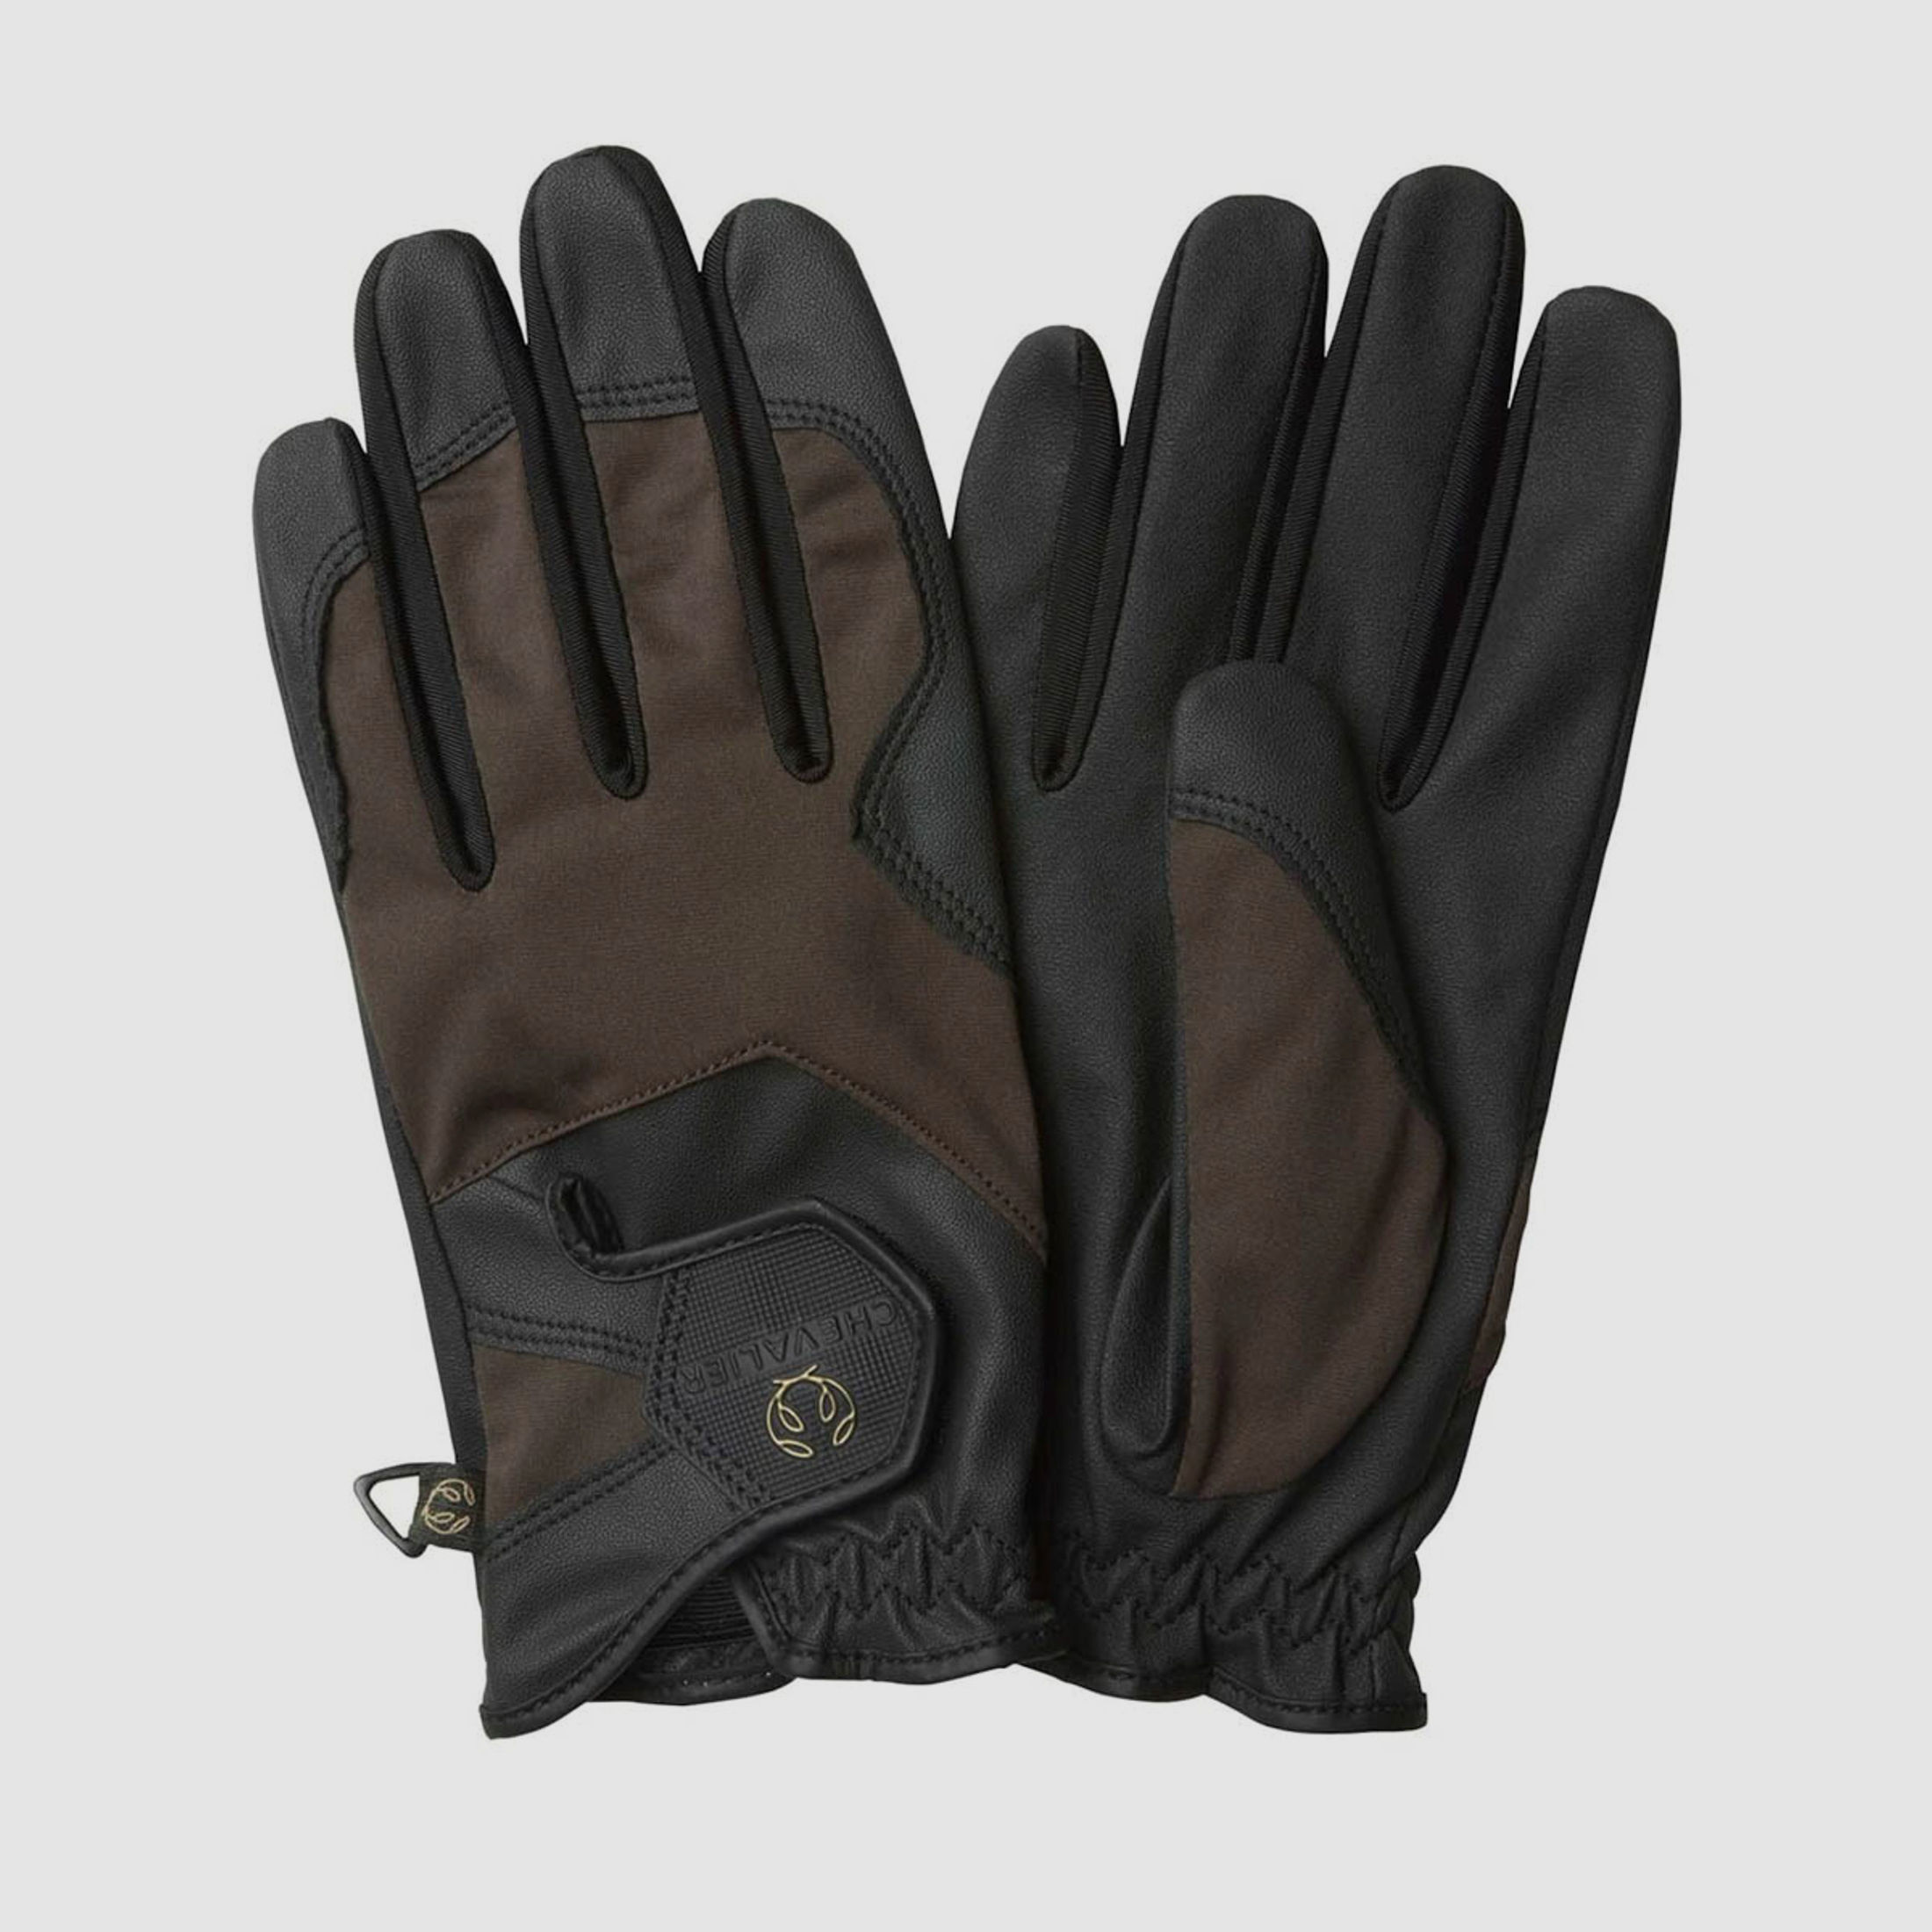 Chevalier Light Shooting Gloves  Leather Gloves